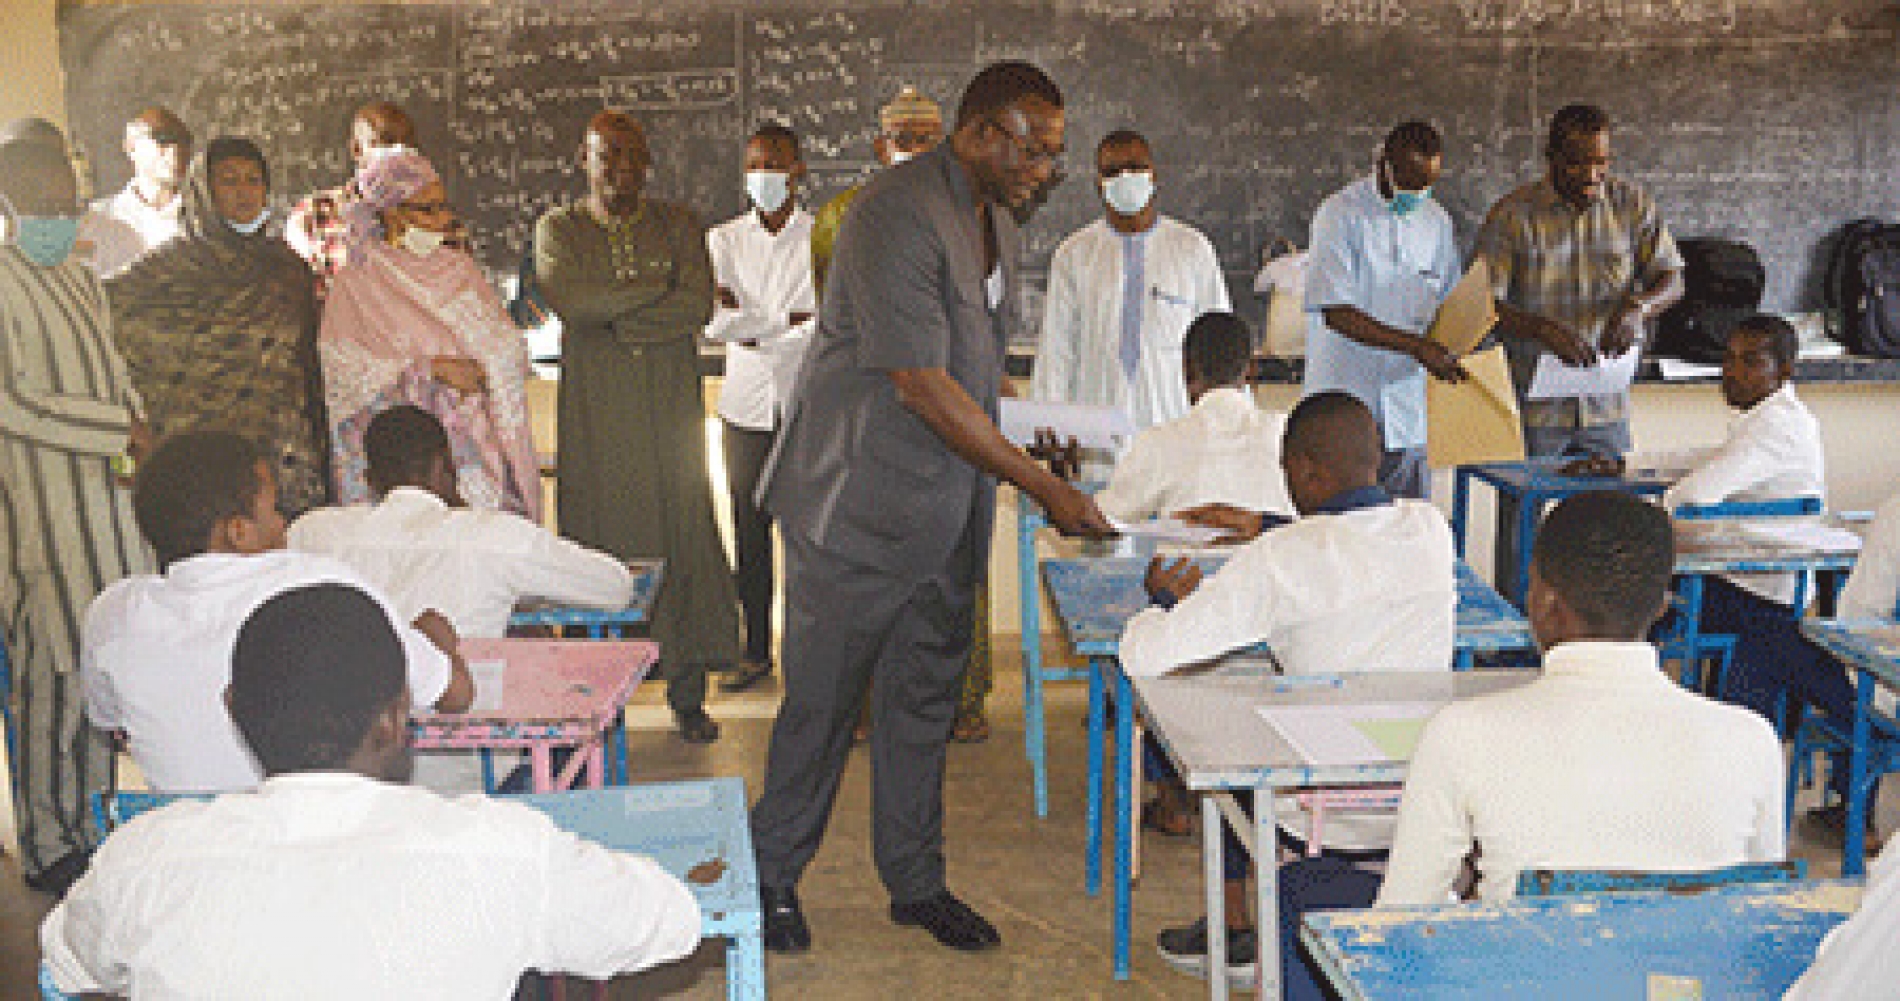 Le Système Educatif nigérien : Socle de la gouvernance du Président de la République, Bazoum Mohamed « Il faut casser des oeufs si on veut faire des omelettes »